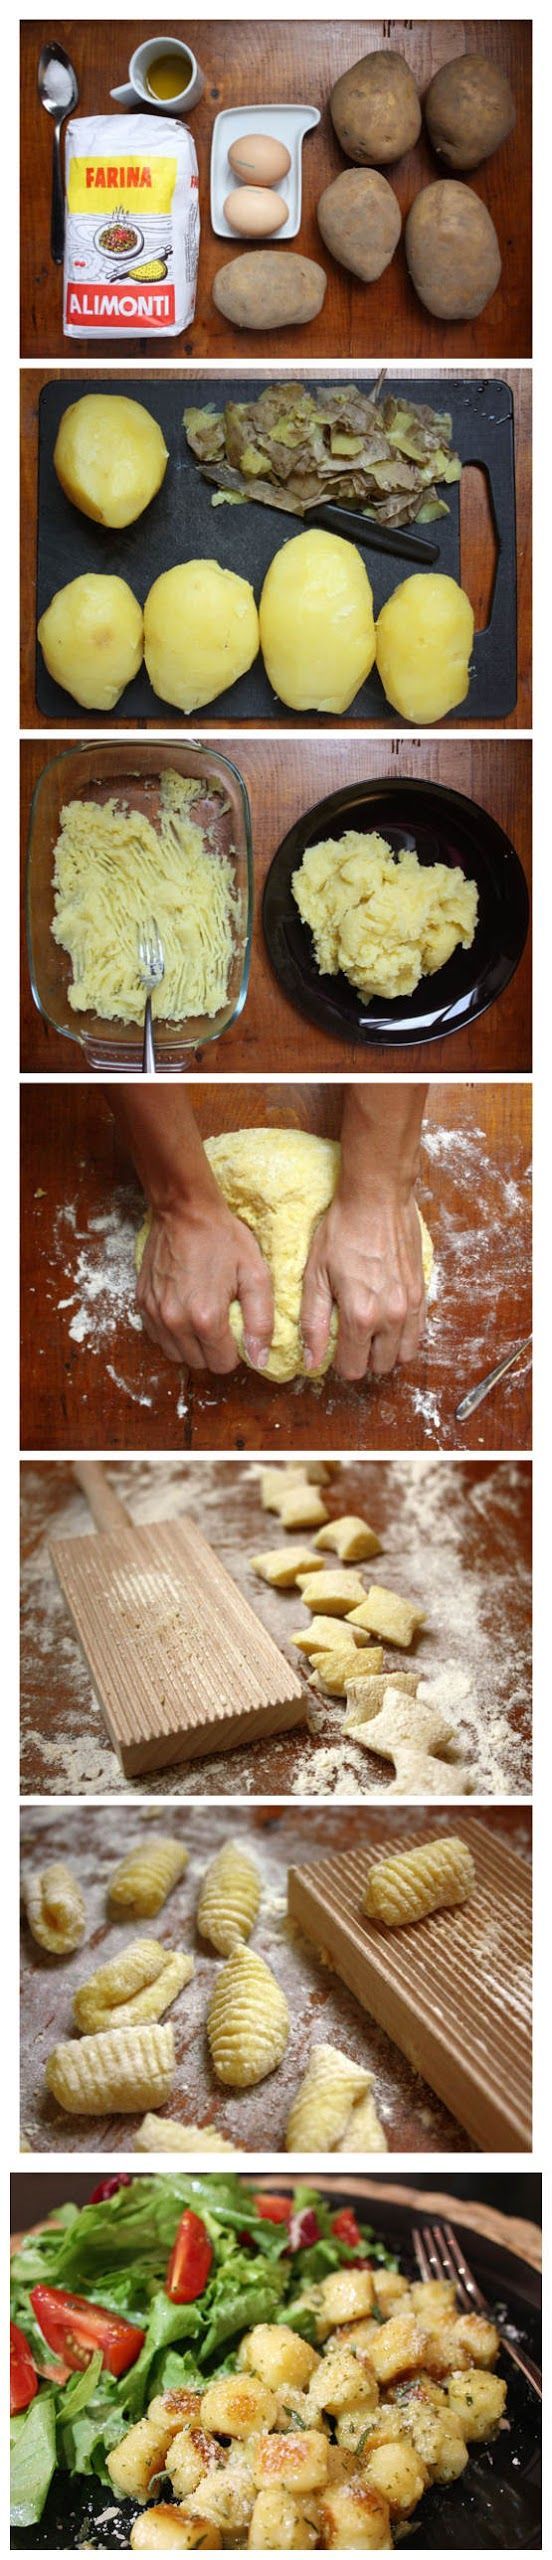 How to Make Gnocchi